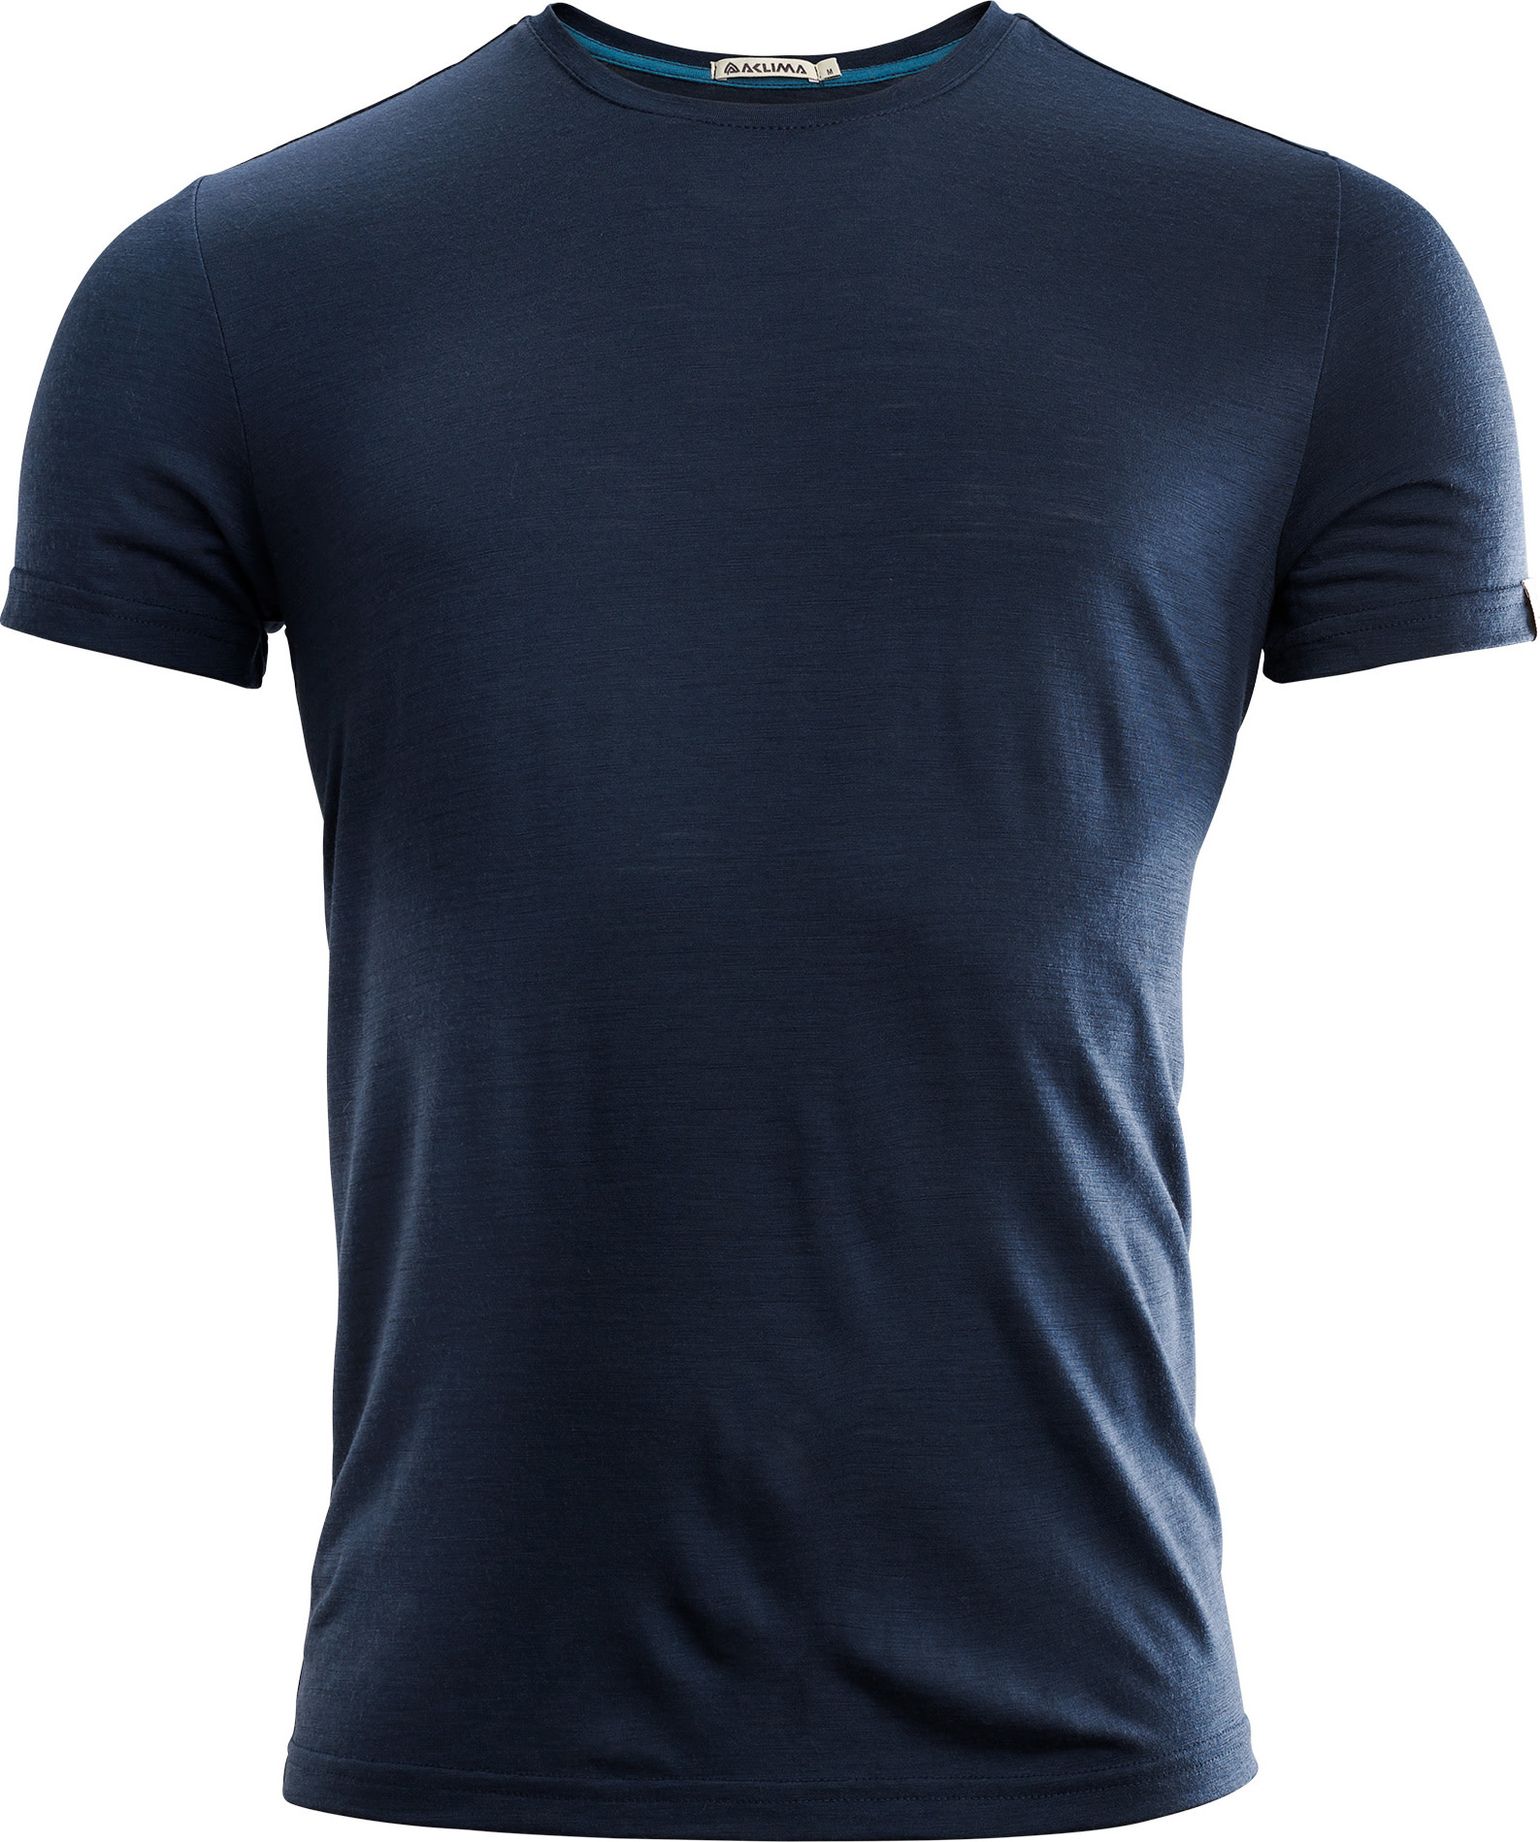 Aclima Men's LightWool T-shirt Round Neck Navy Blazer